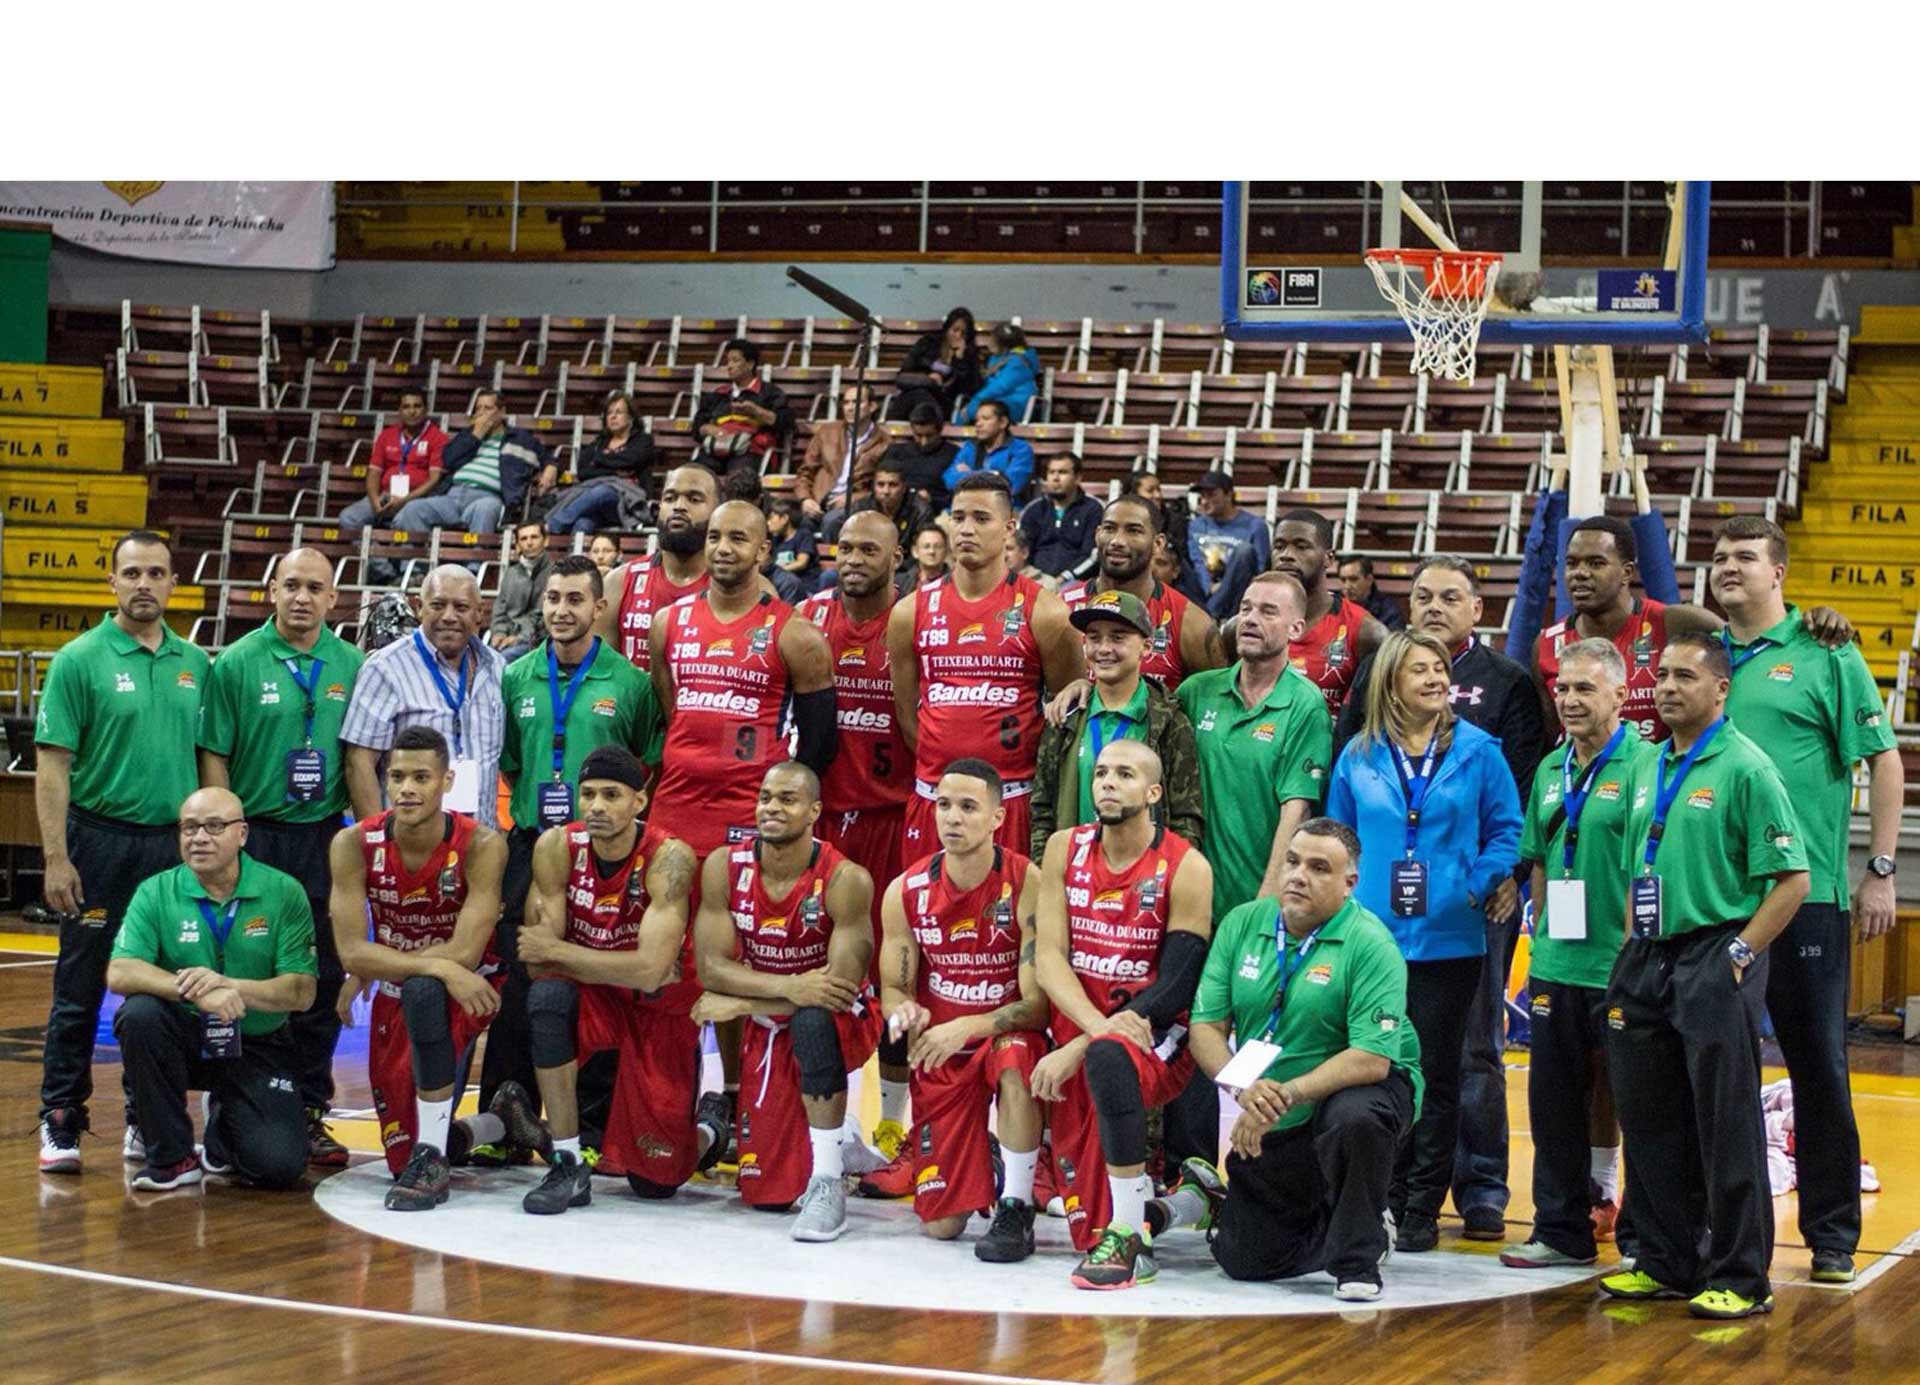 El equipo venezolano venció este martes al Franca Basketball Club de Brasil, en el inicio de la Liga Sudamericana de Baloncesto